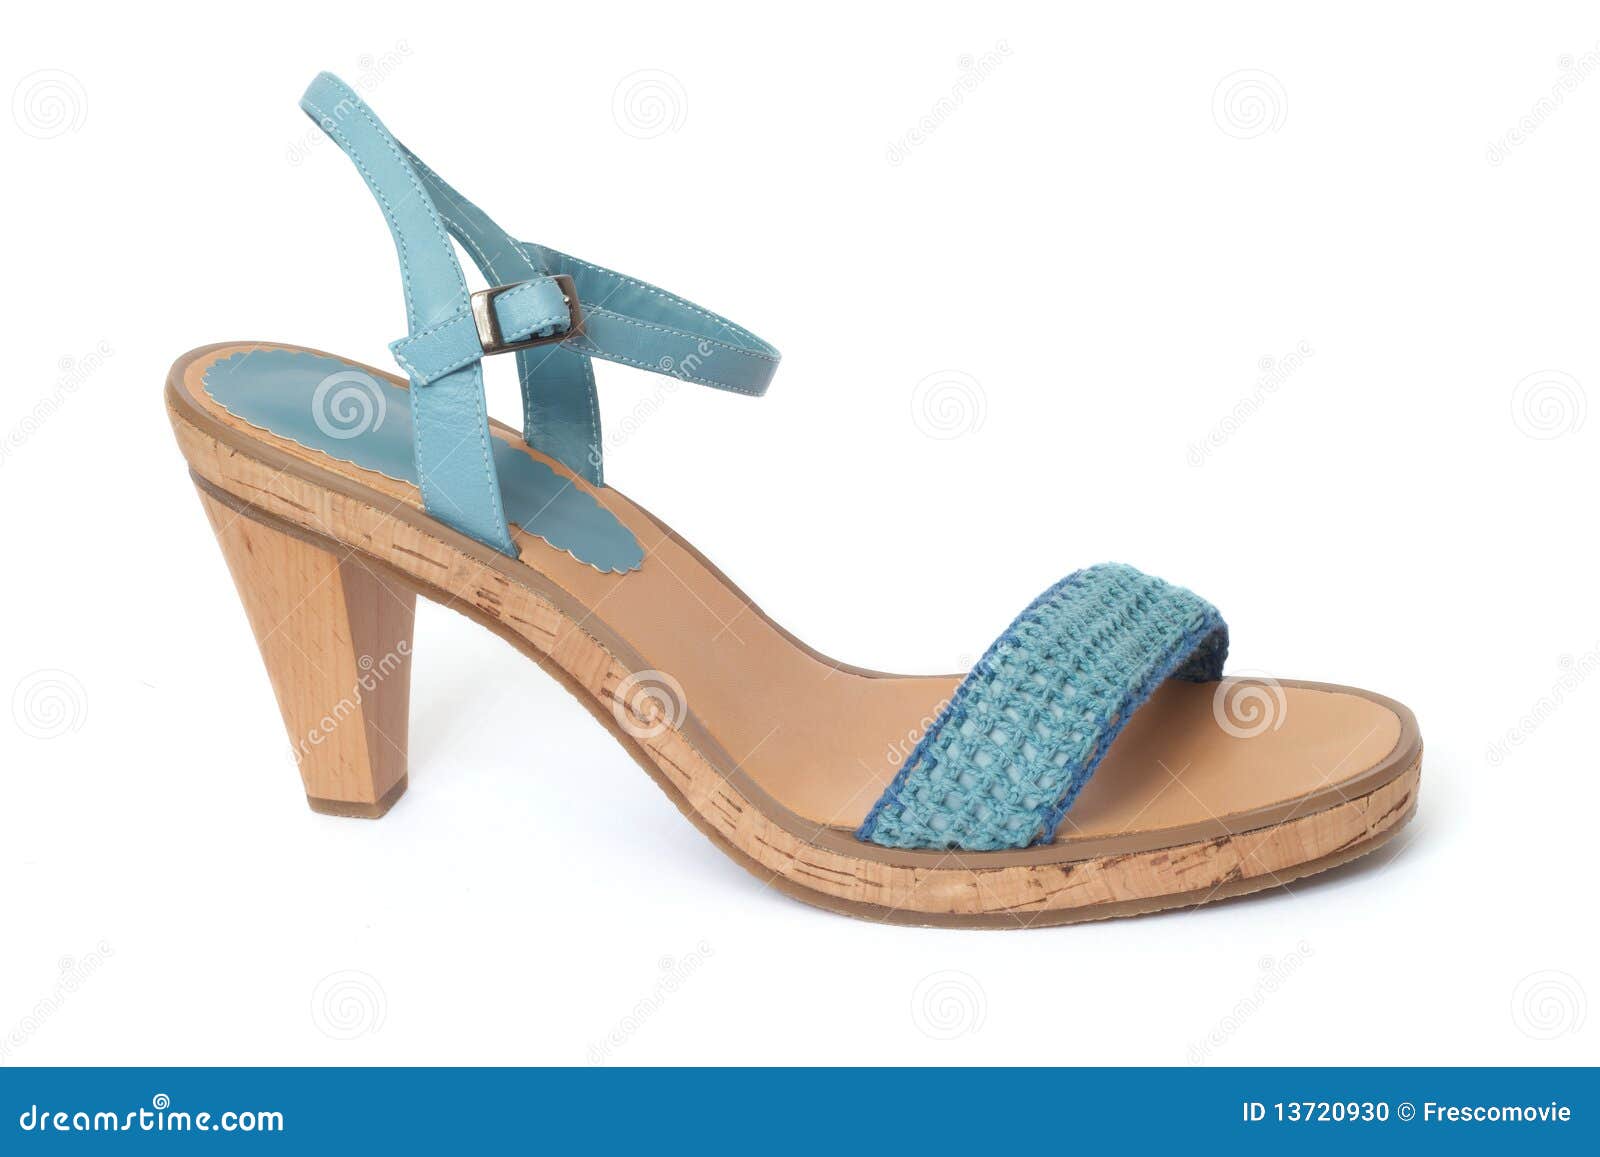 Blue shoe stock photo. Image of clothing, female, beautiful - 13720930